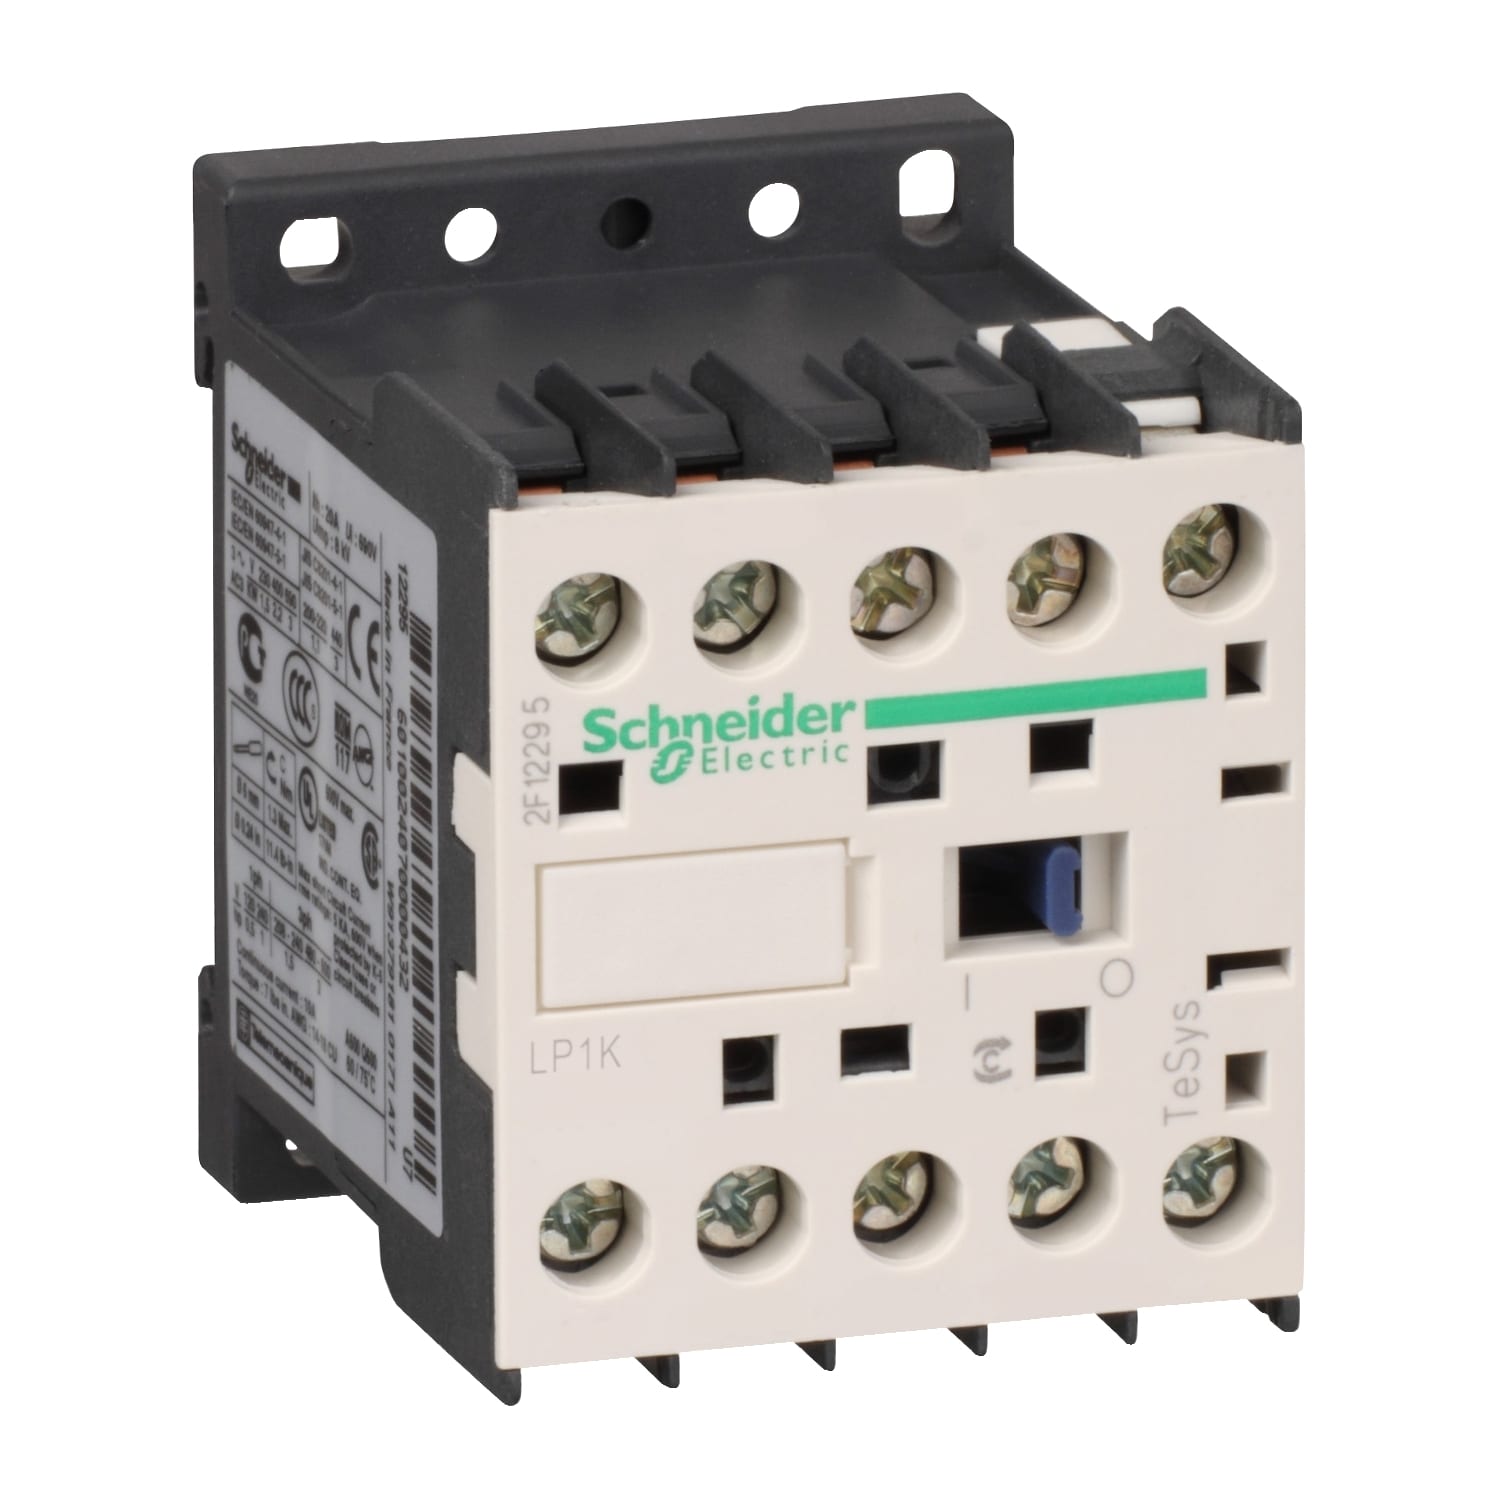 Schneider Electric - TeSys LP1K - contacteur - 3P - AC-3 440V - 12A - bobine 24Vcc